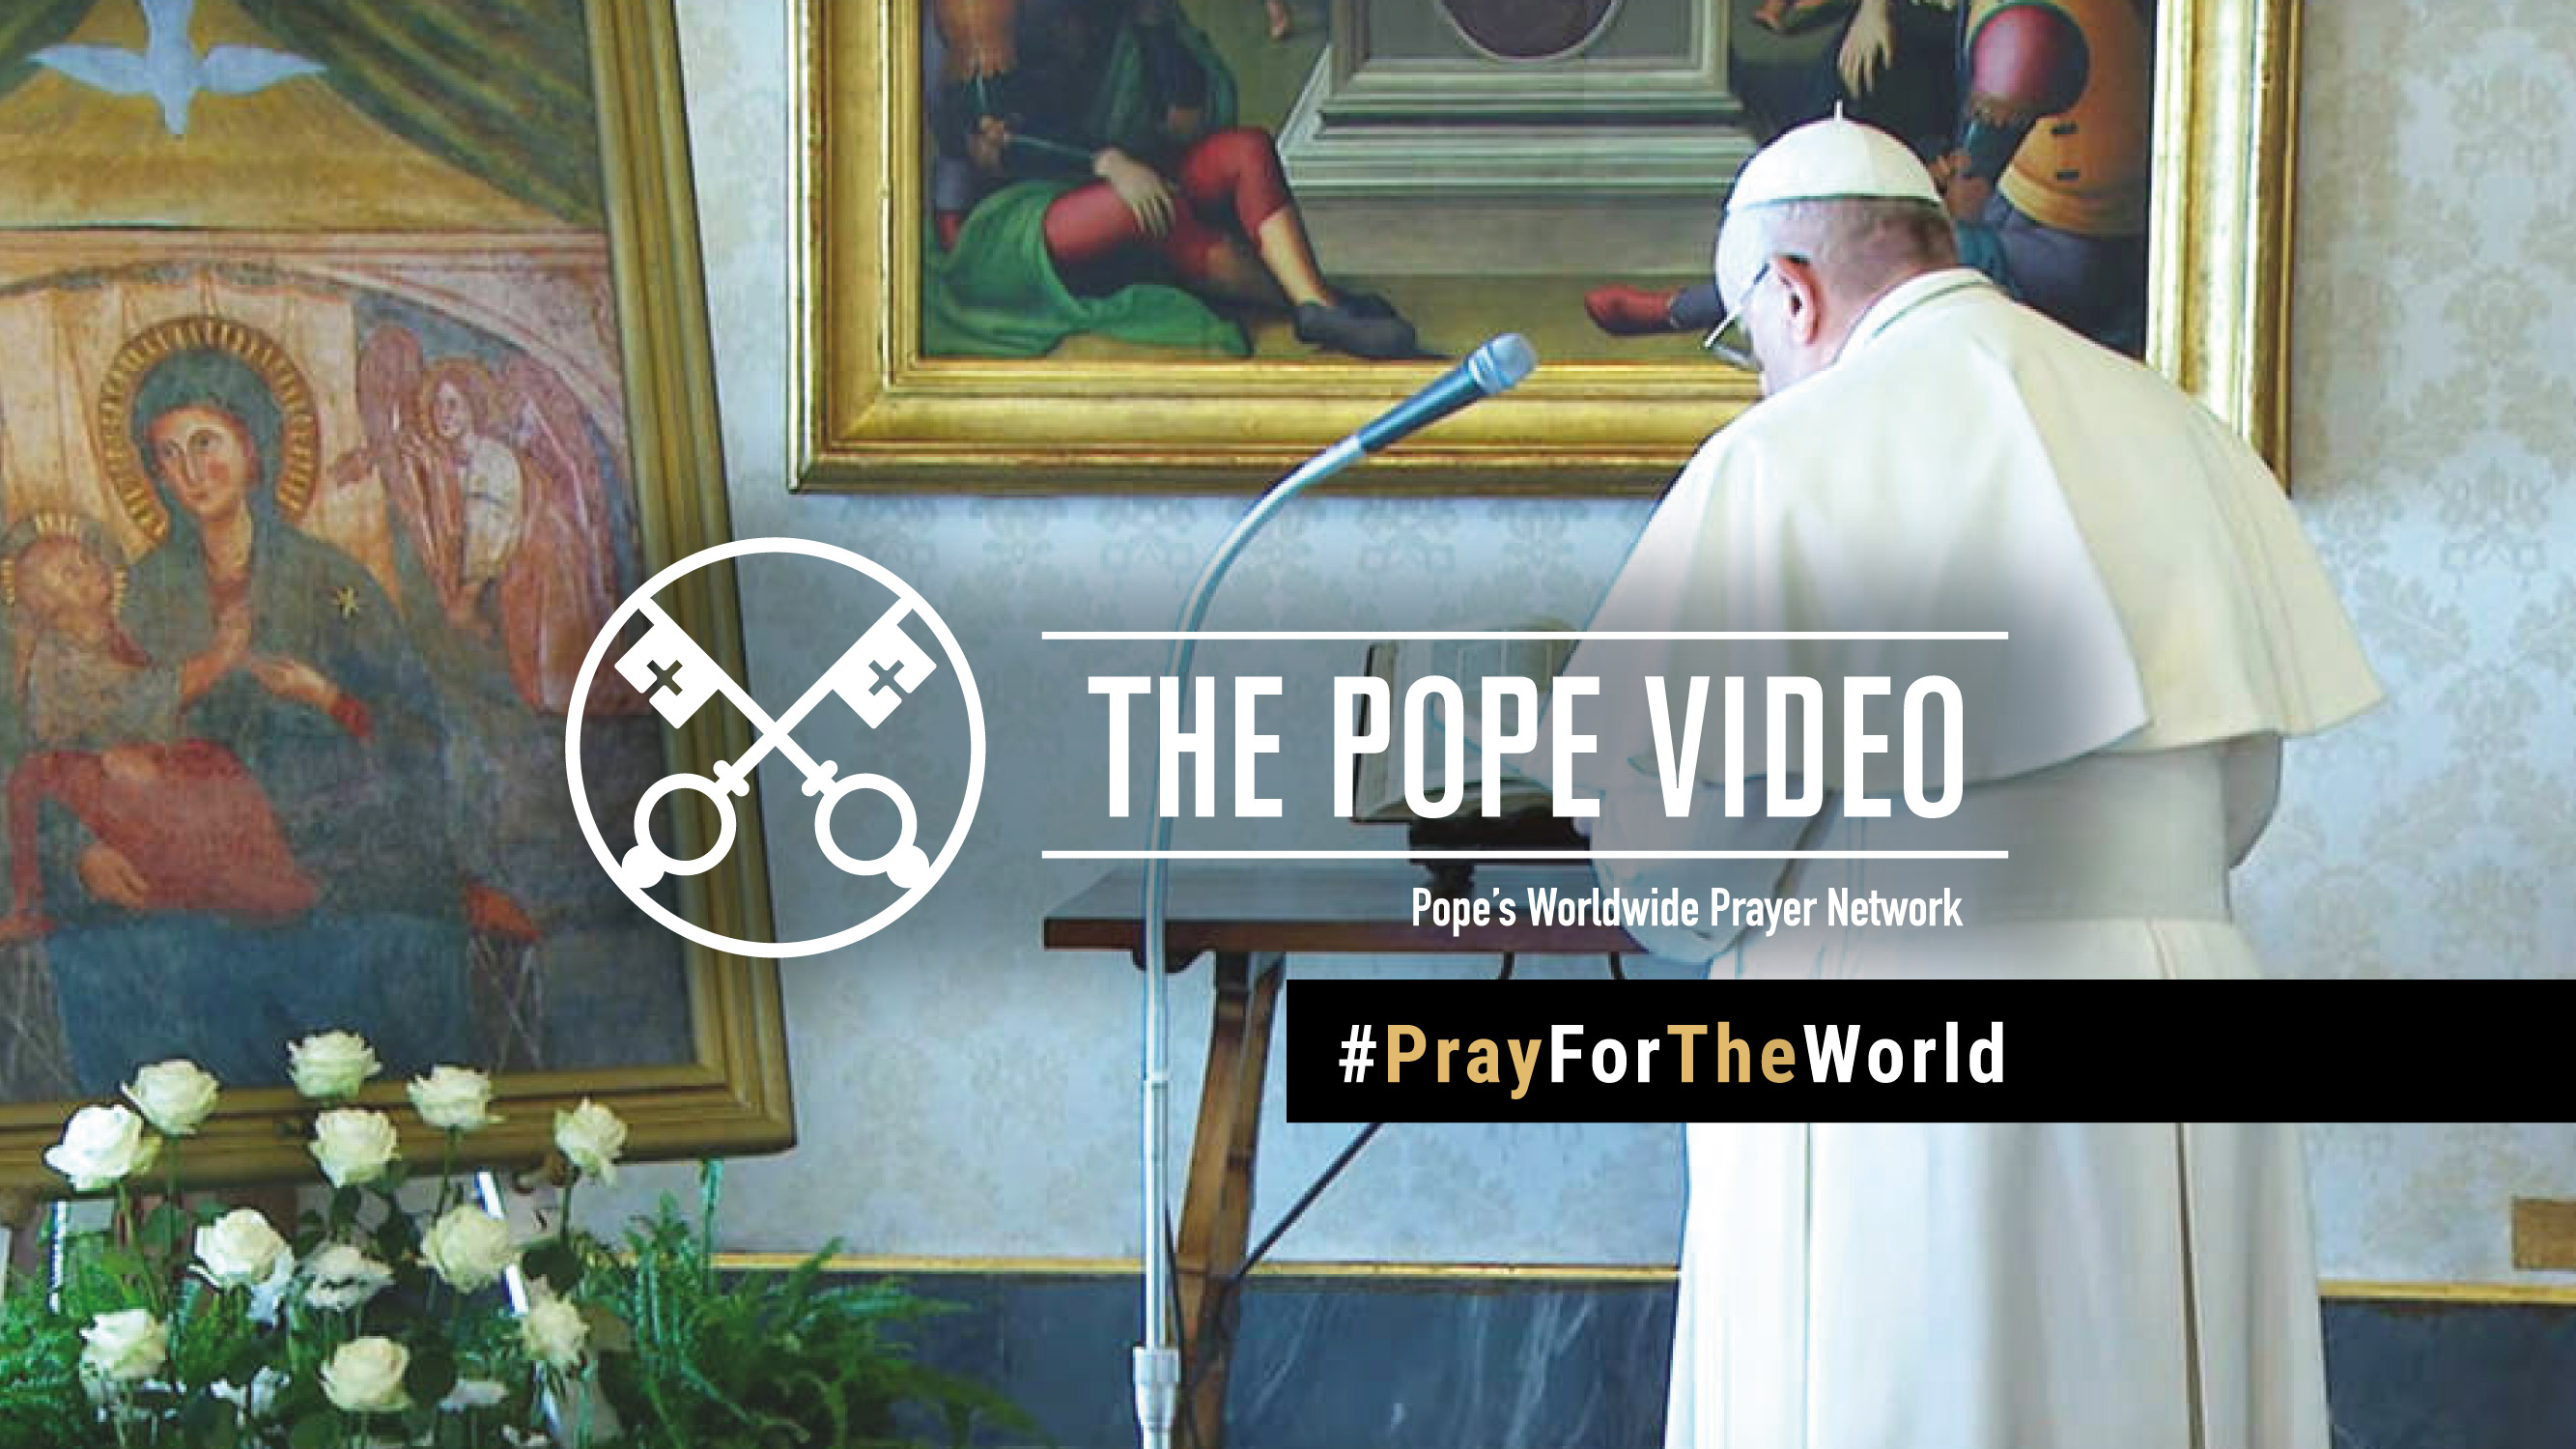 MAREC: Papeževa posebna marčevska molitev za konec pandemije